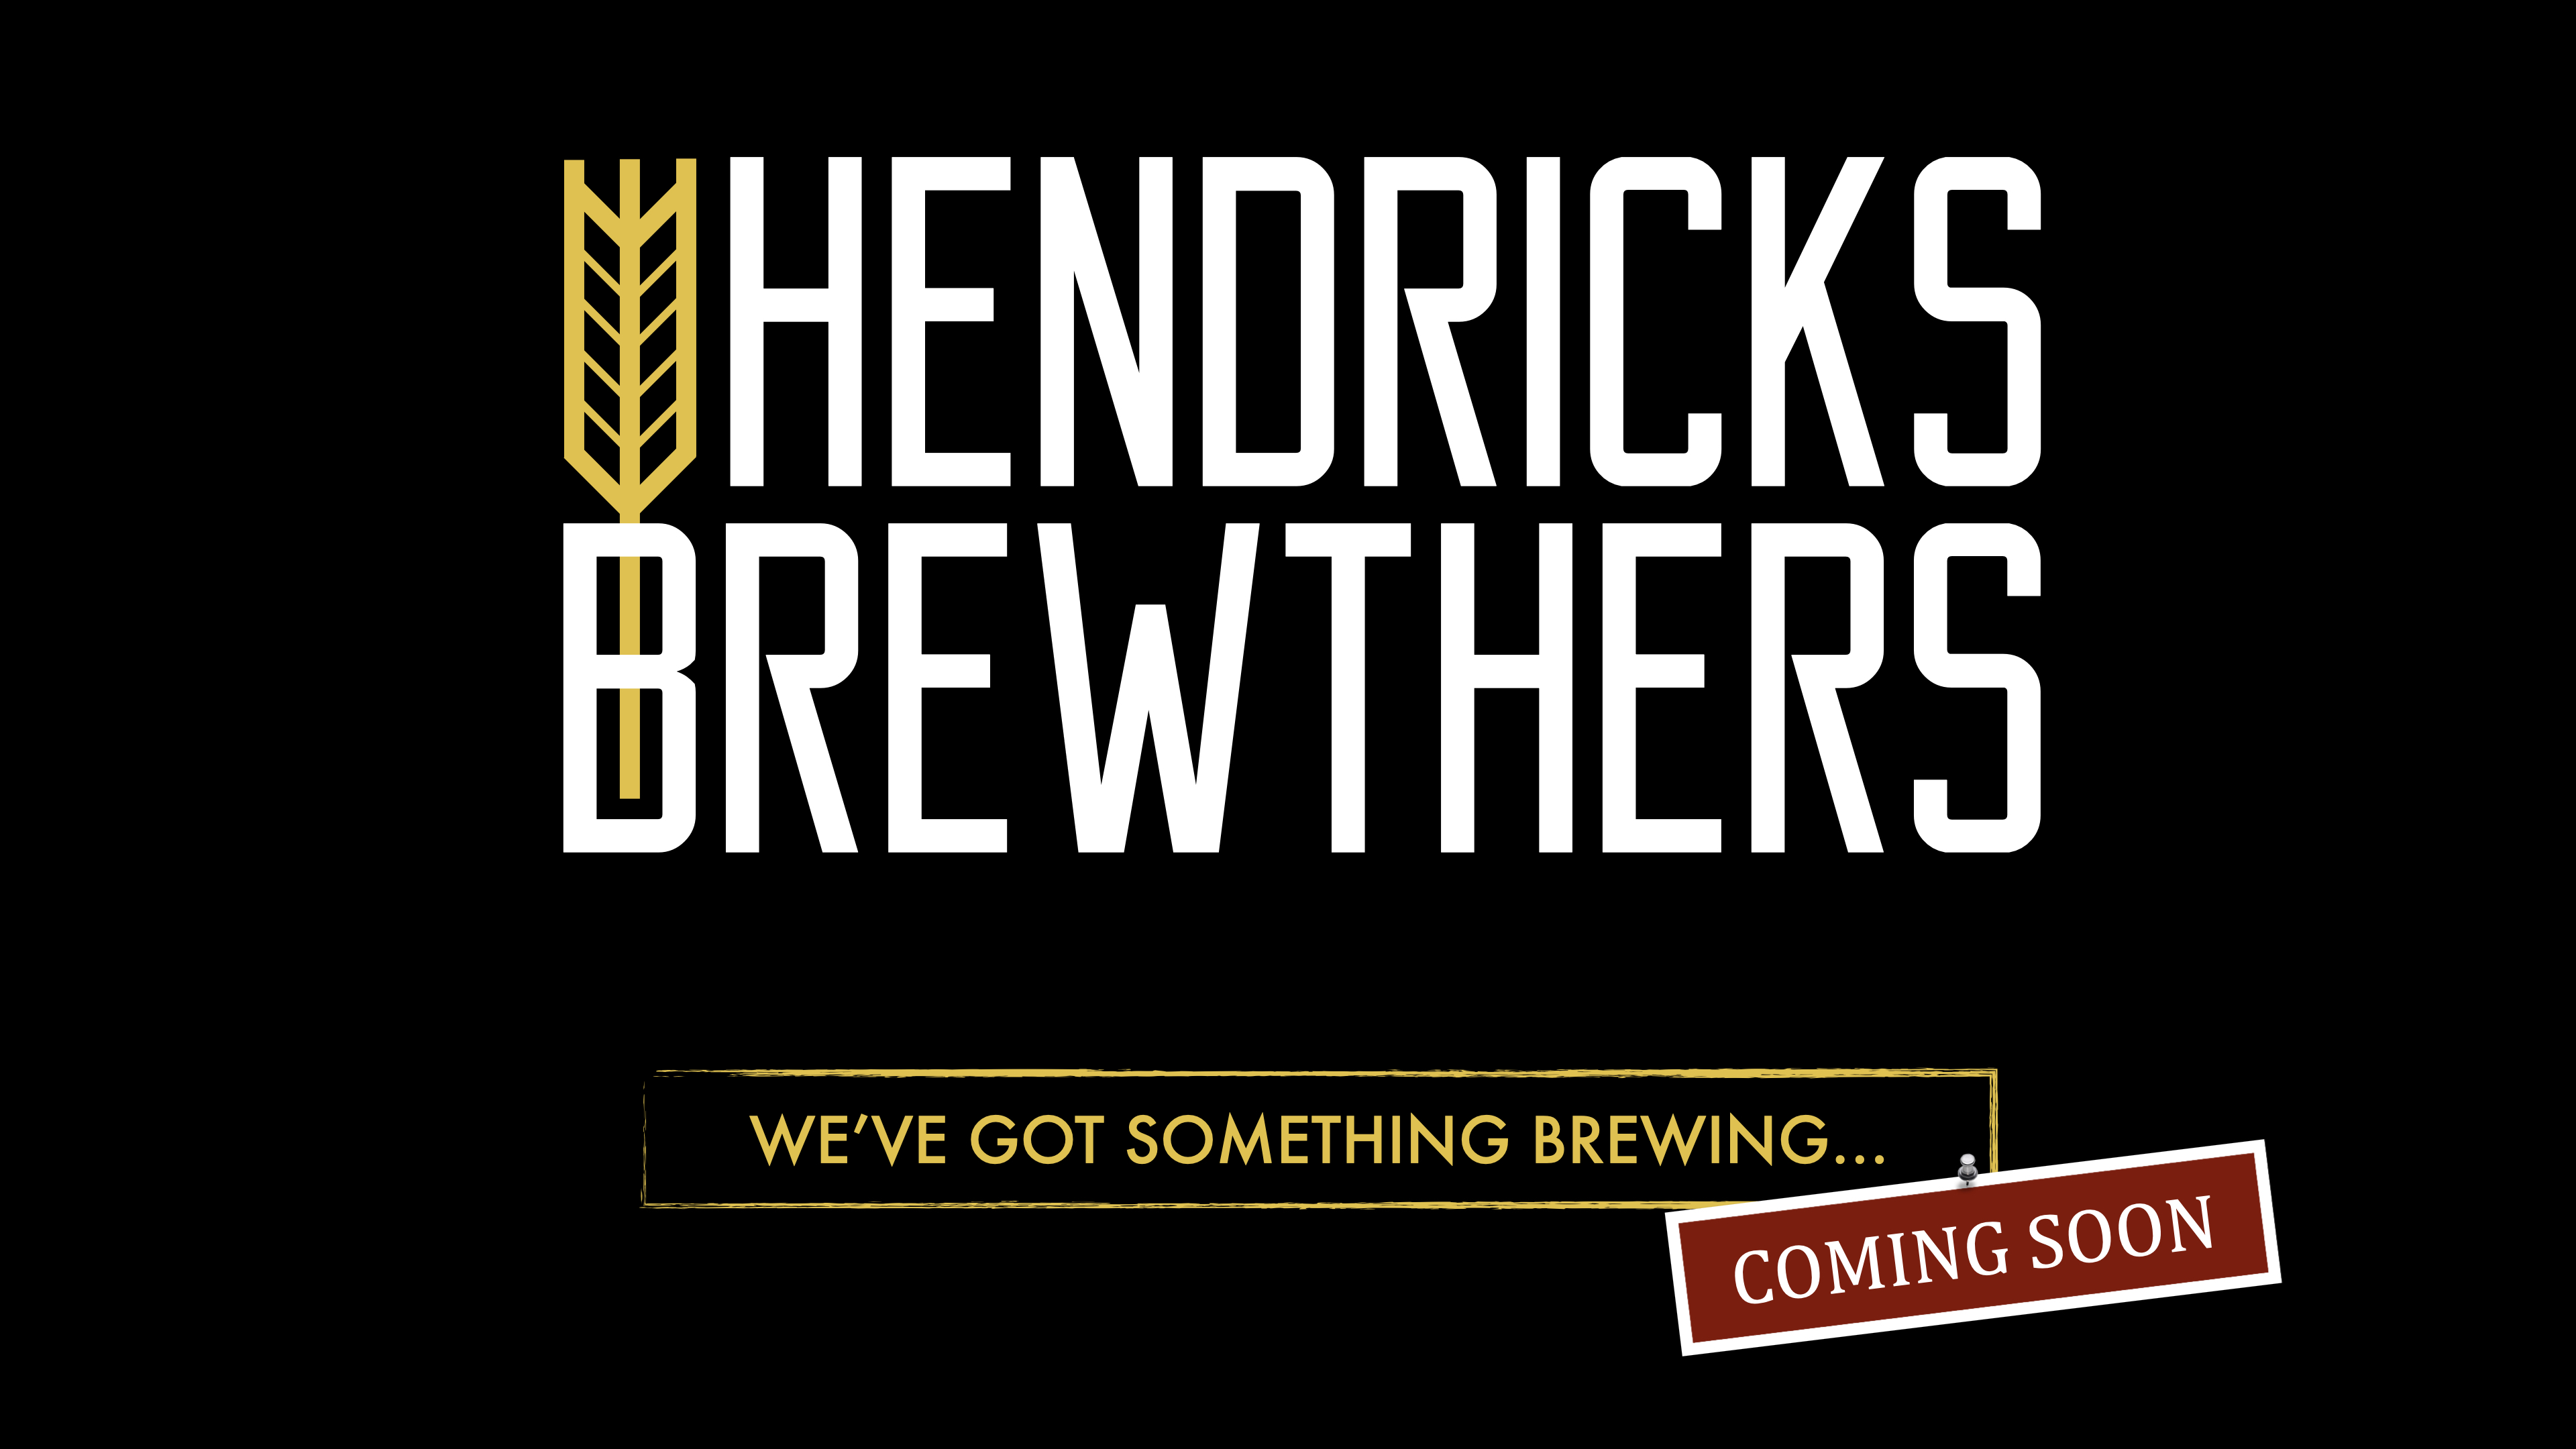 Hendricks Brewthers